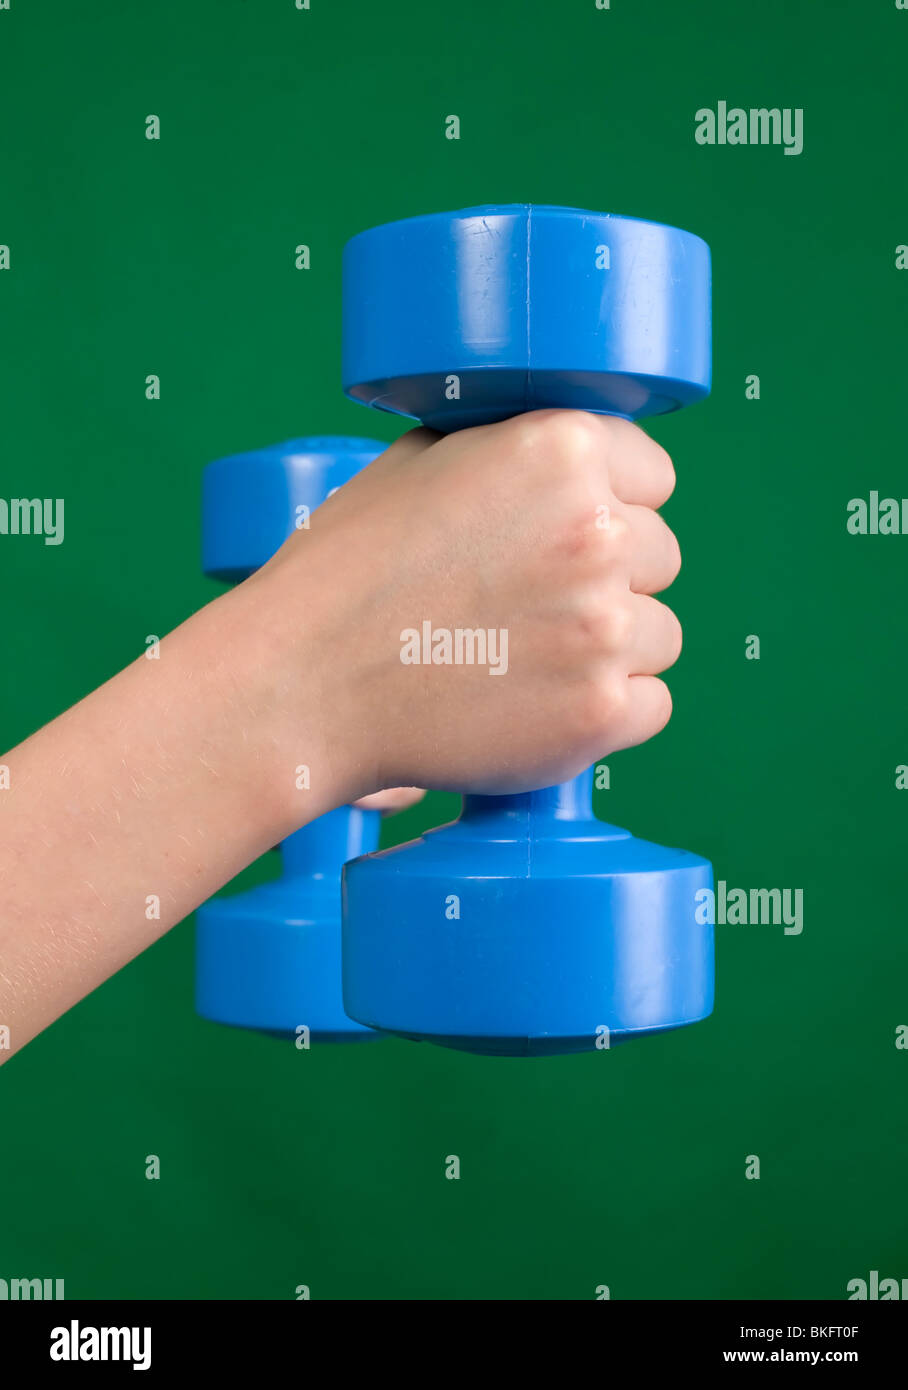 Menschliche Hand hält blau Hantel, grüner Hintergrund Stockfoto